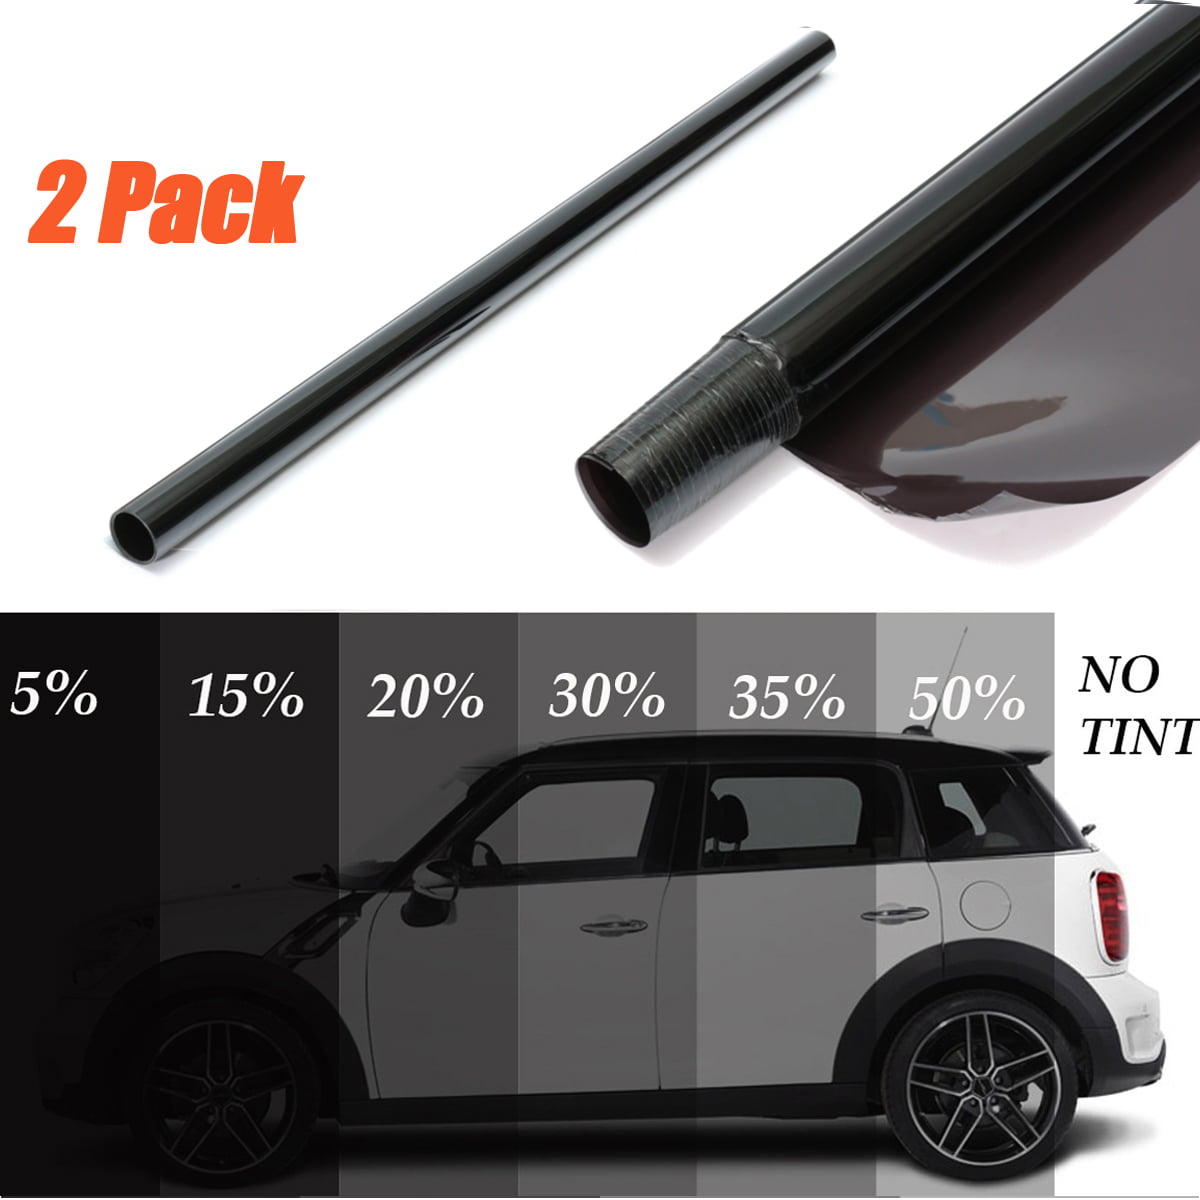 Home  Car Window Tint  Sunshade Film 15% 20% 25% 35% 50%VLT  Glass Sticker 